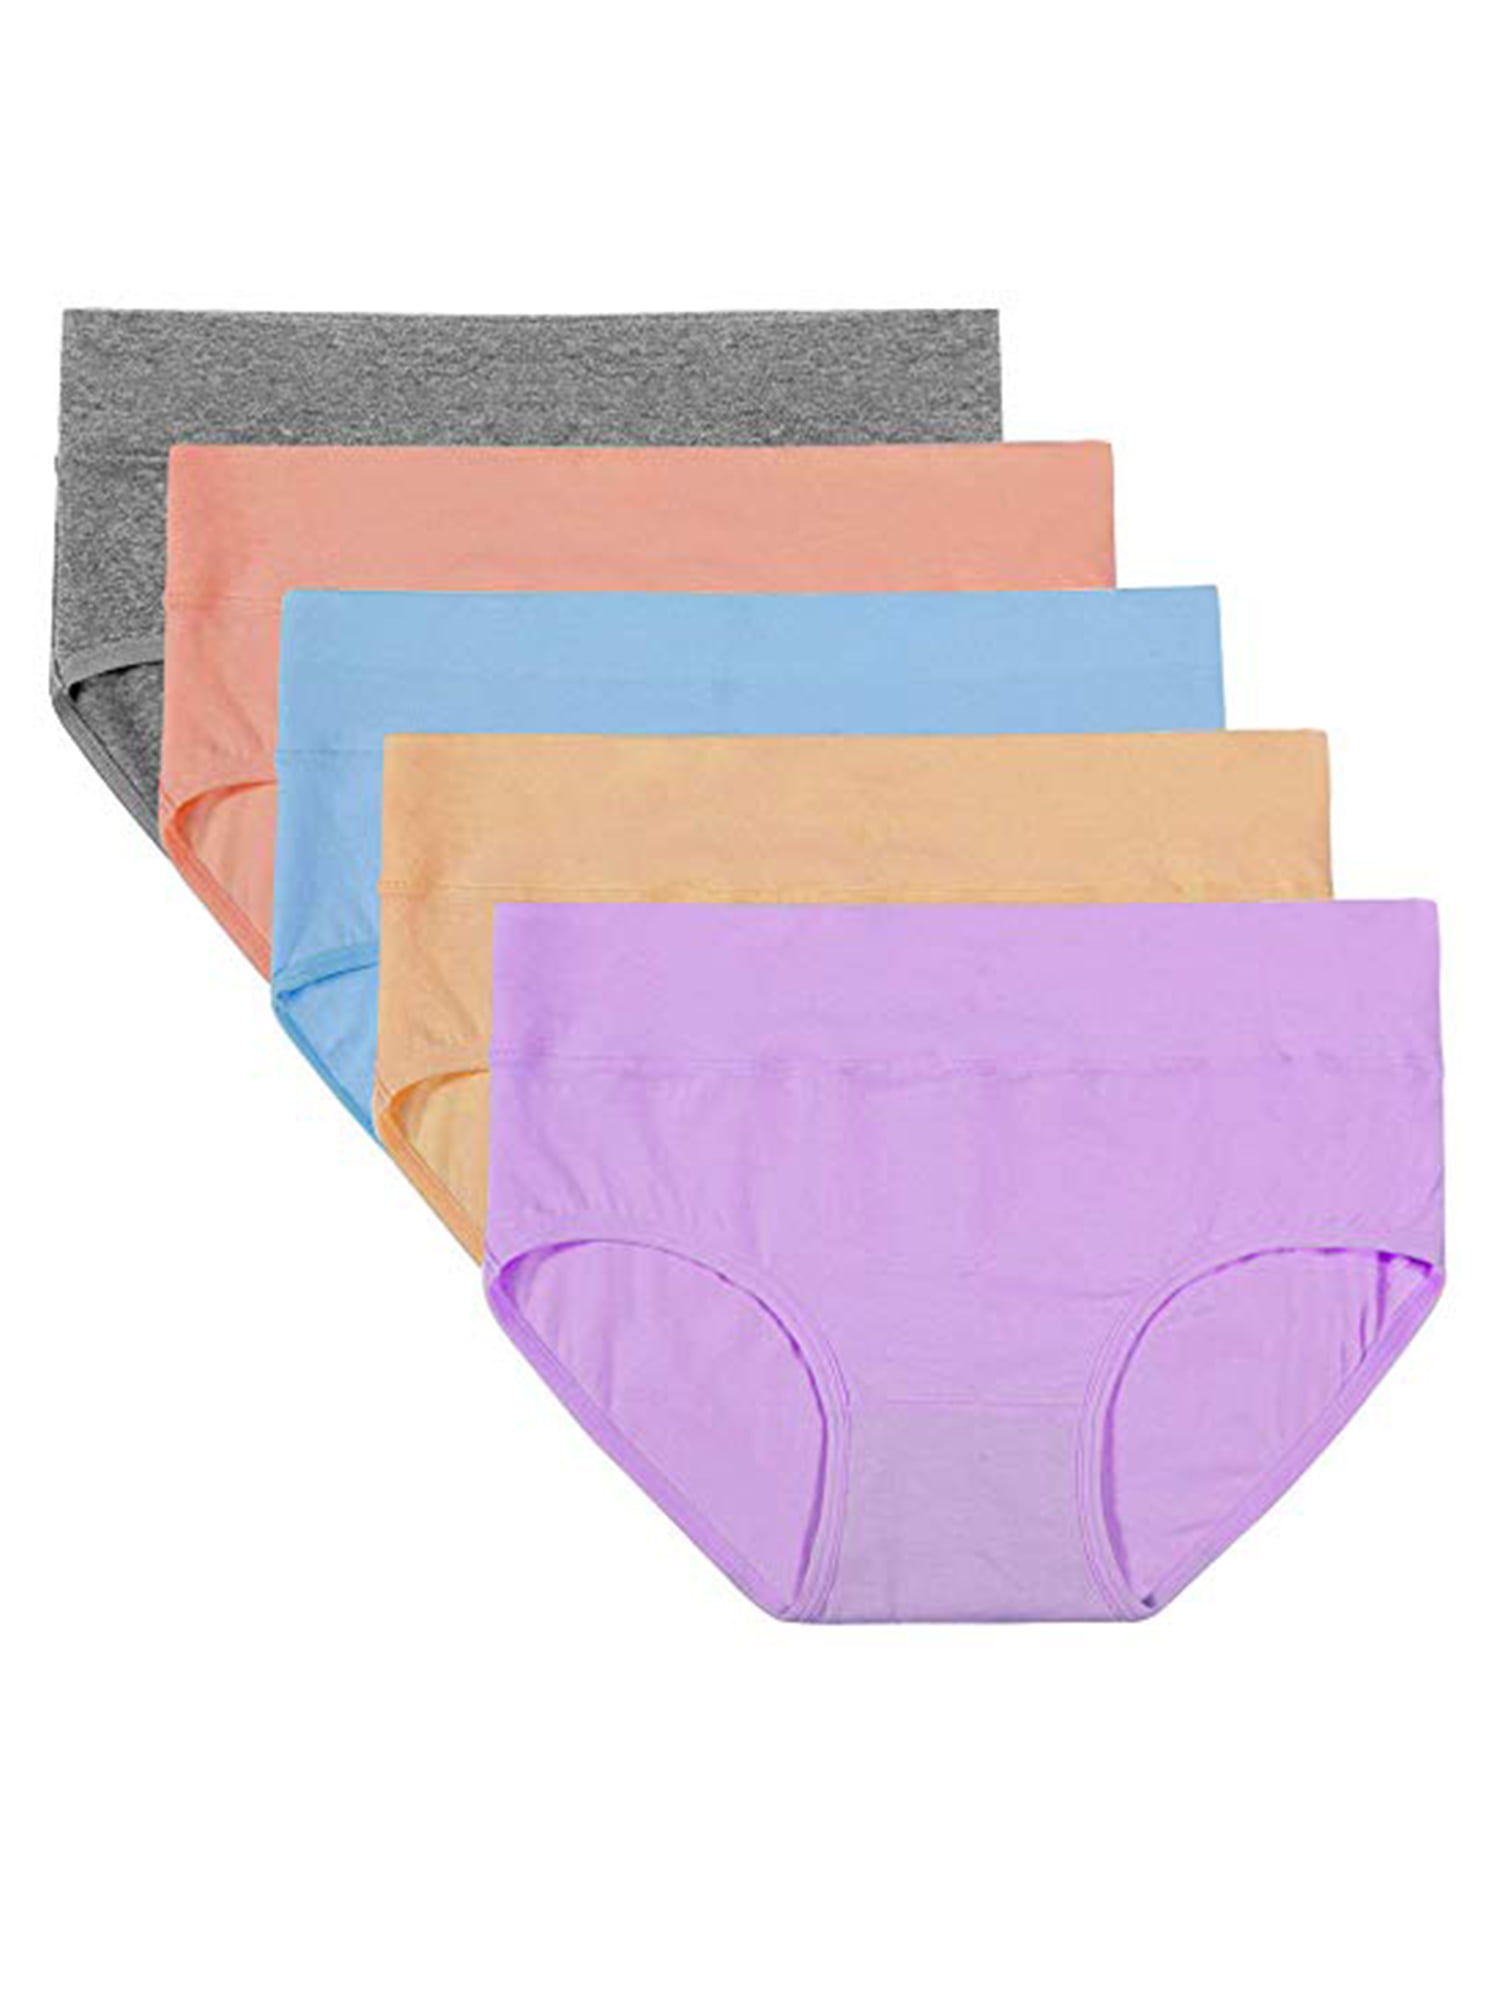 Mens Underwear Briefs 5-Pack Cotton Low Rise Multi Color Soft Underpant